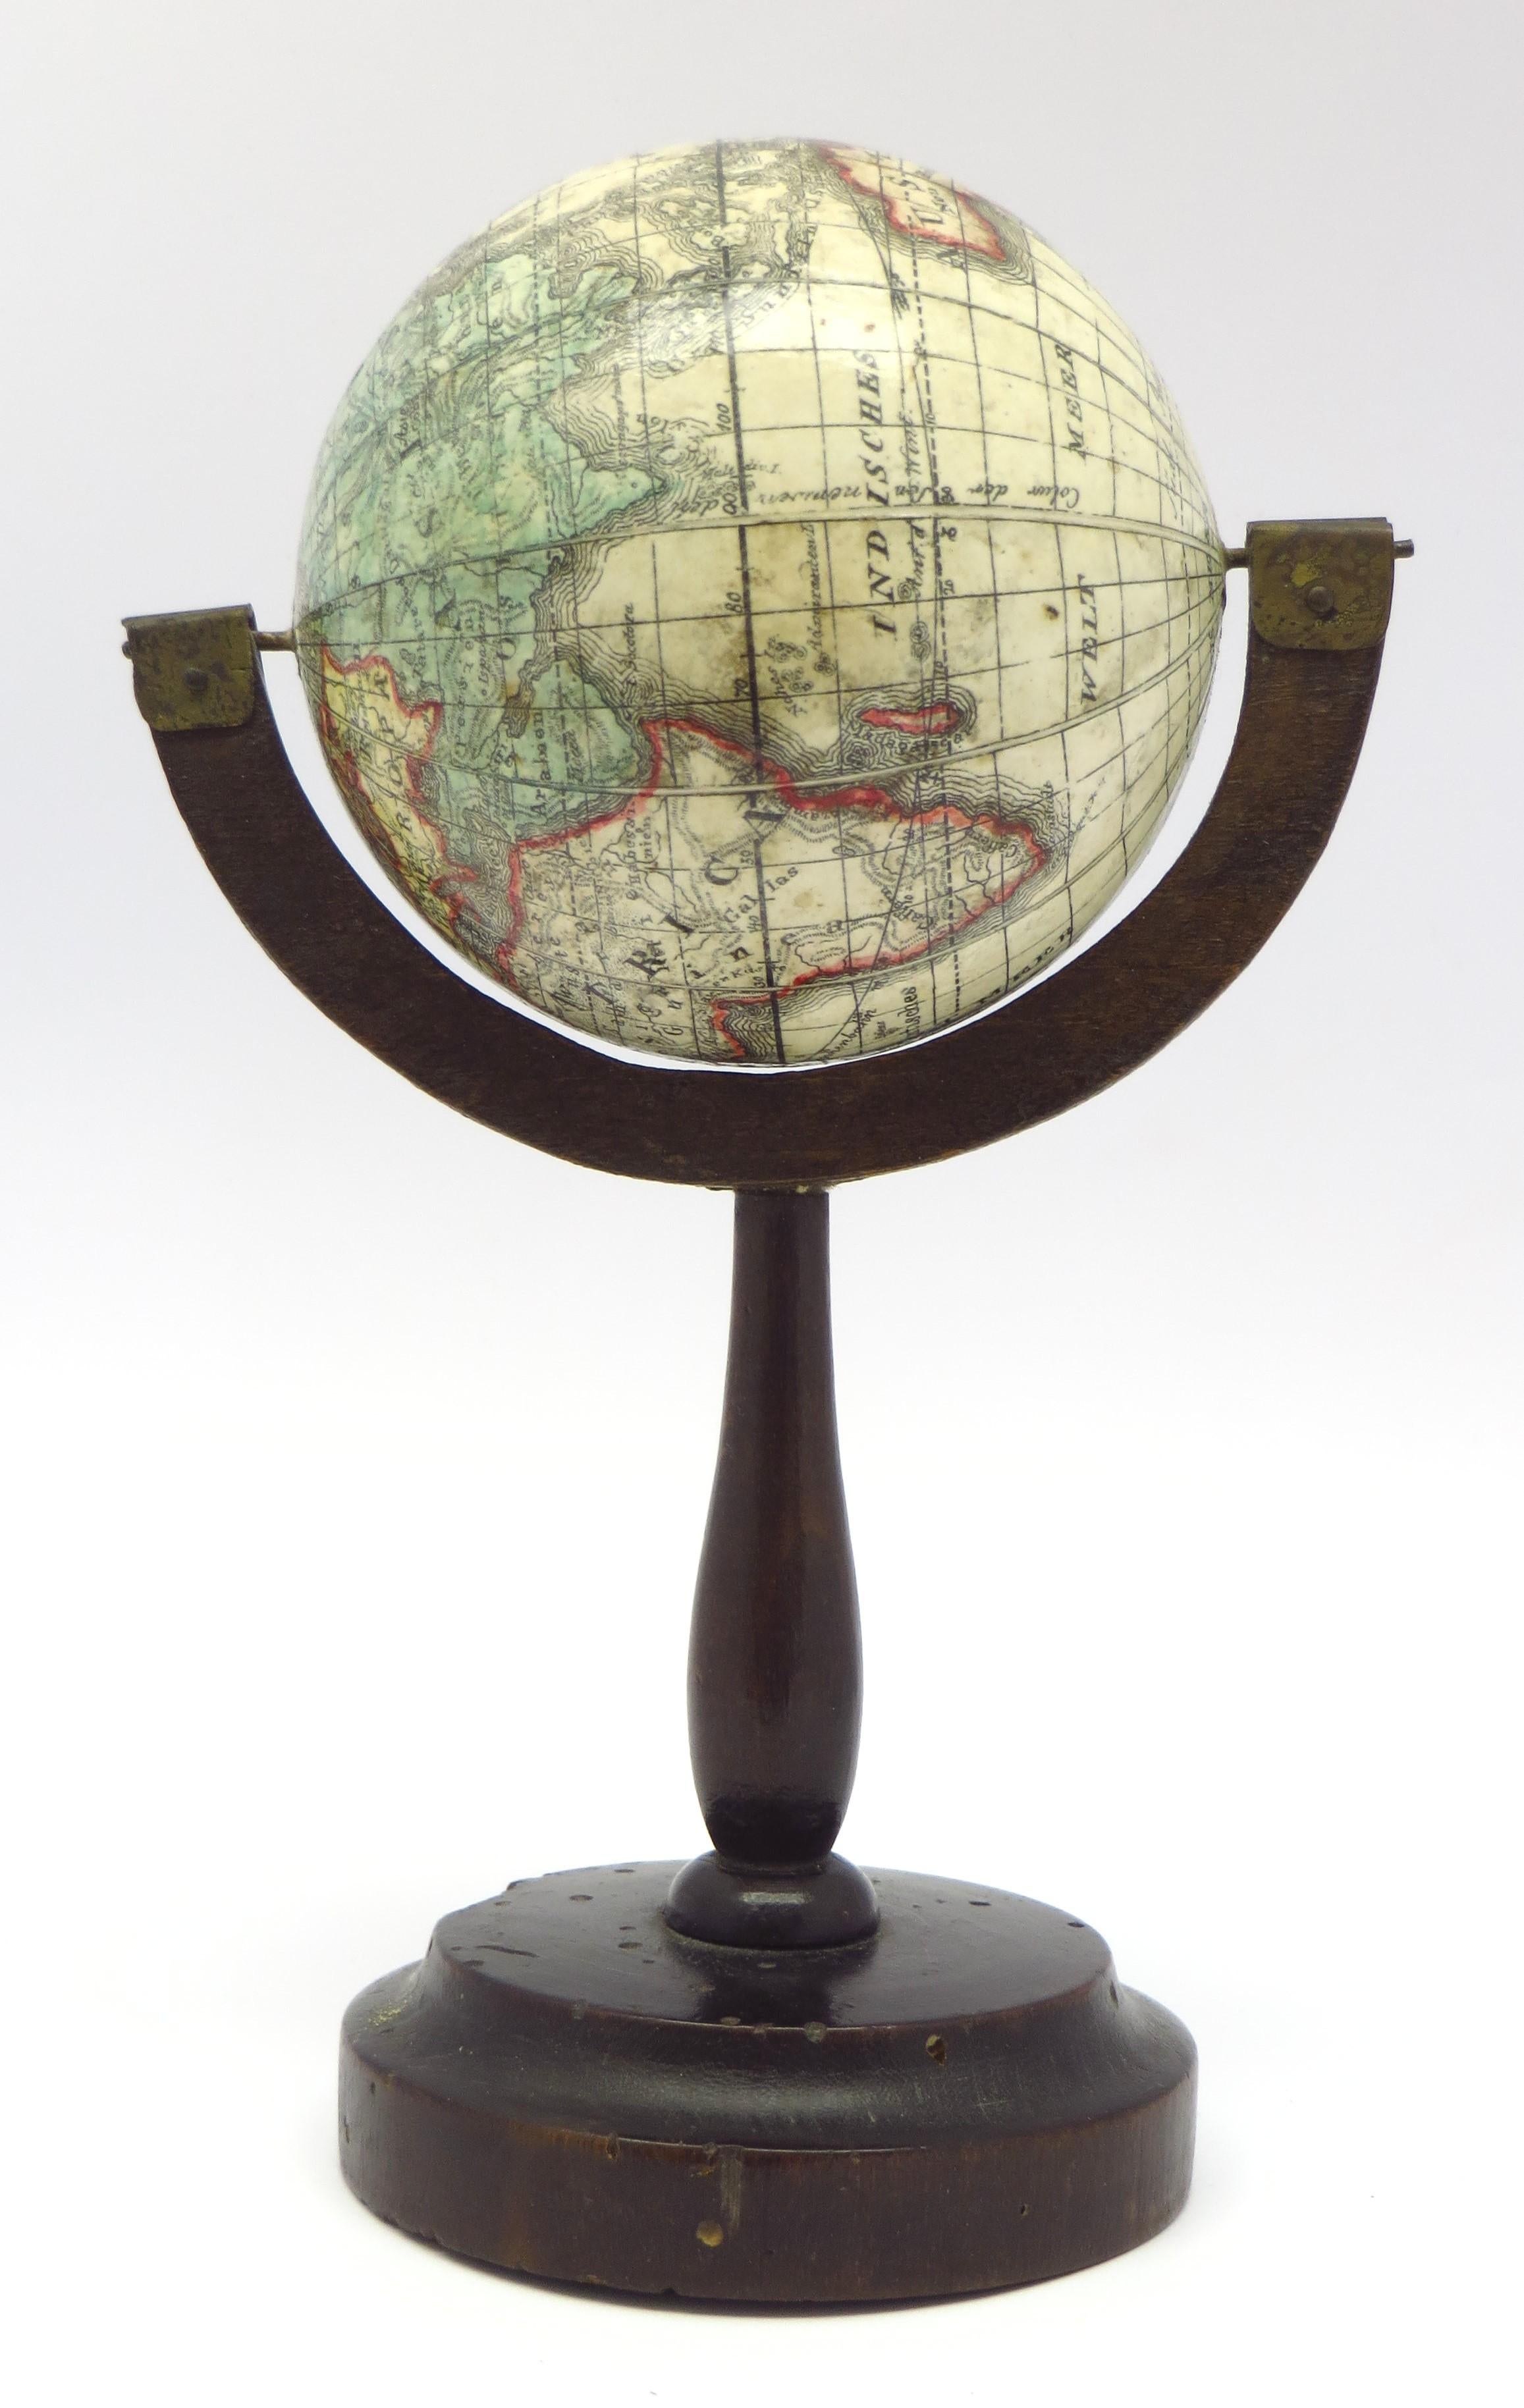 Une paire rare de globes terrestres et célestes miniatures.

par K.K. Müller, 1822
Karlsruhe, Allemagne

Diamètre des globes : 7 cm. Hauteur totale : 14,5 cm. 

Chacune d'entre elles comporte 12 gores en papier gravé et coloré à la main, sur une